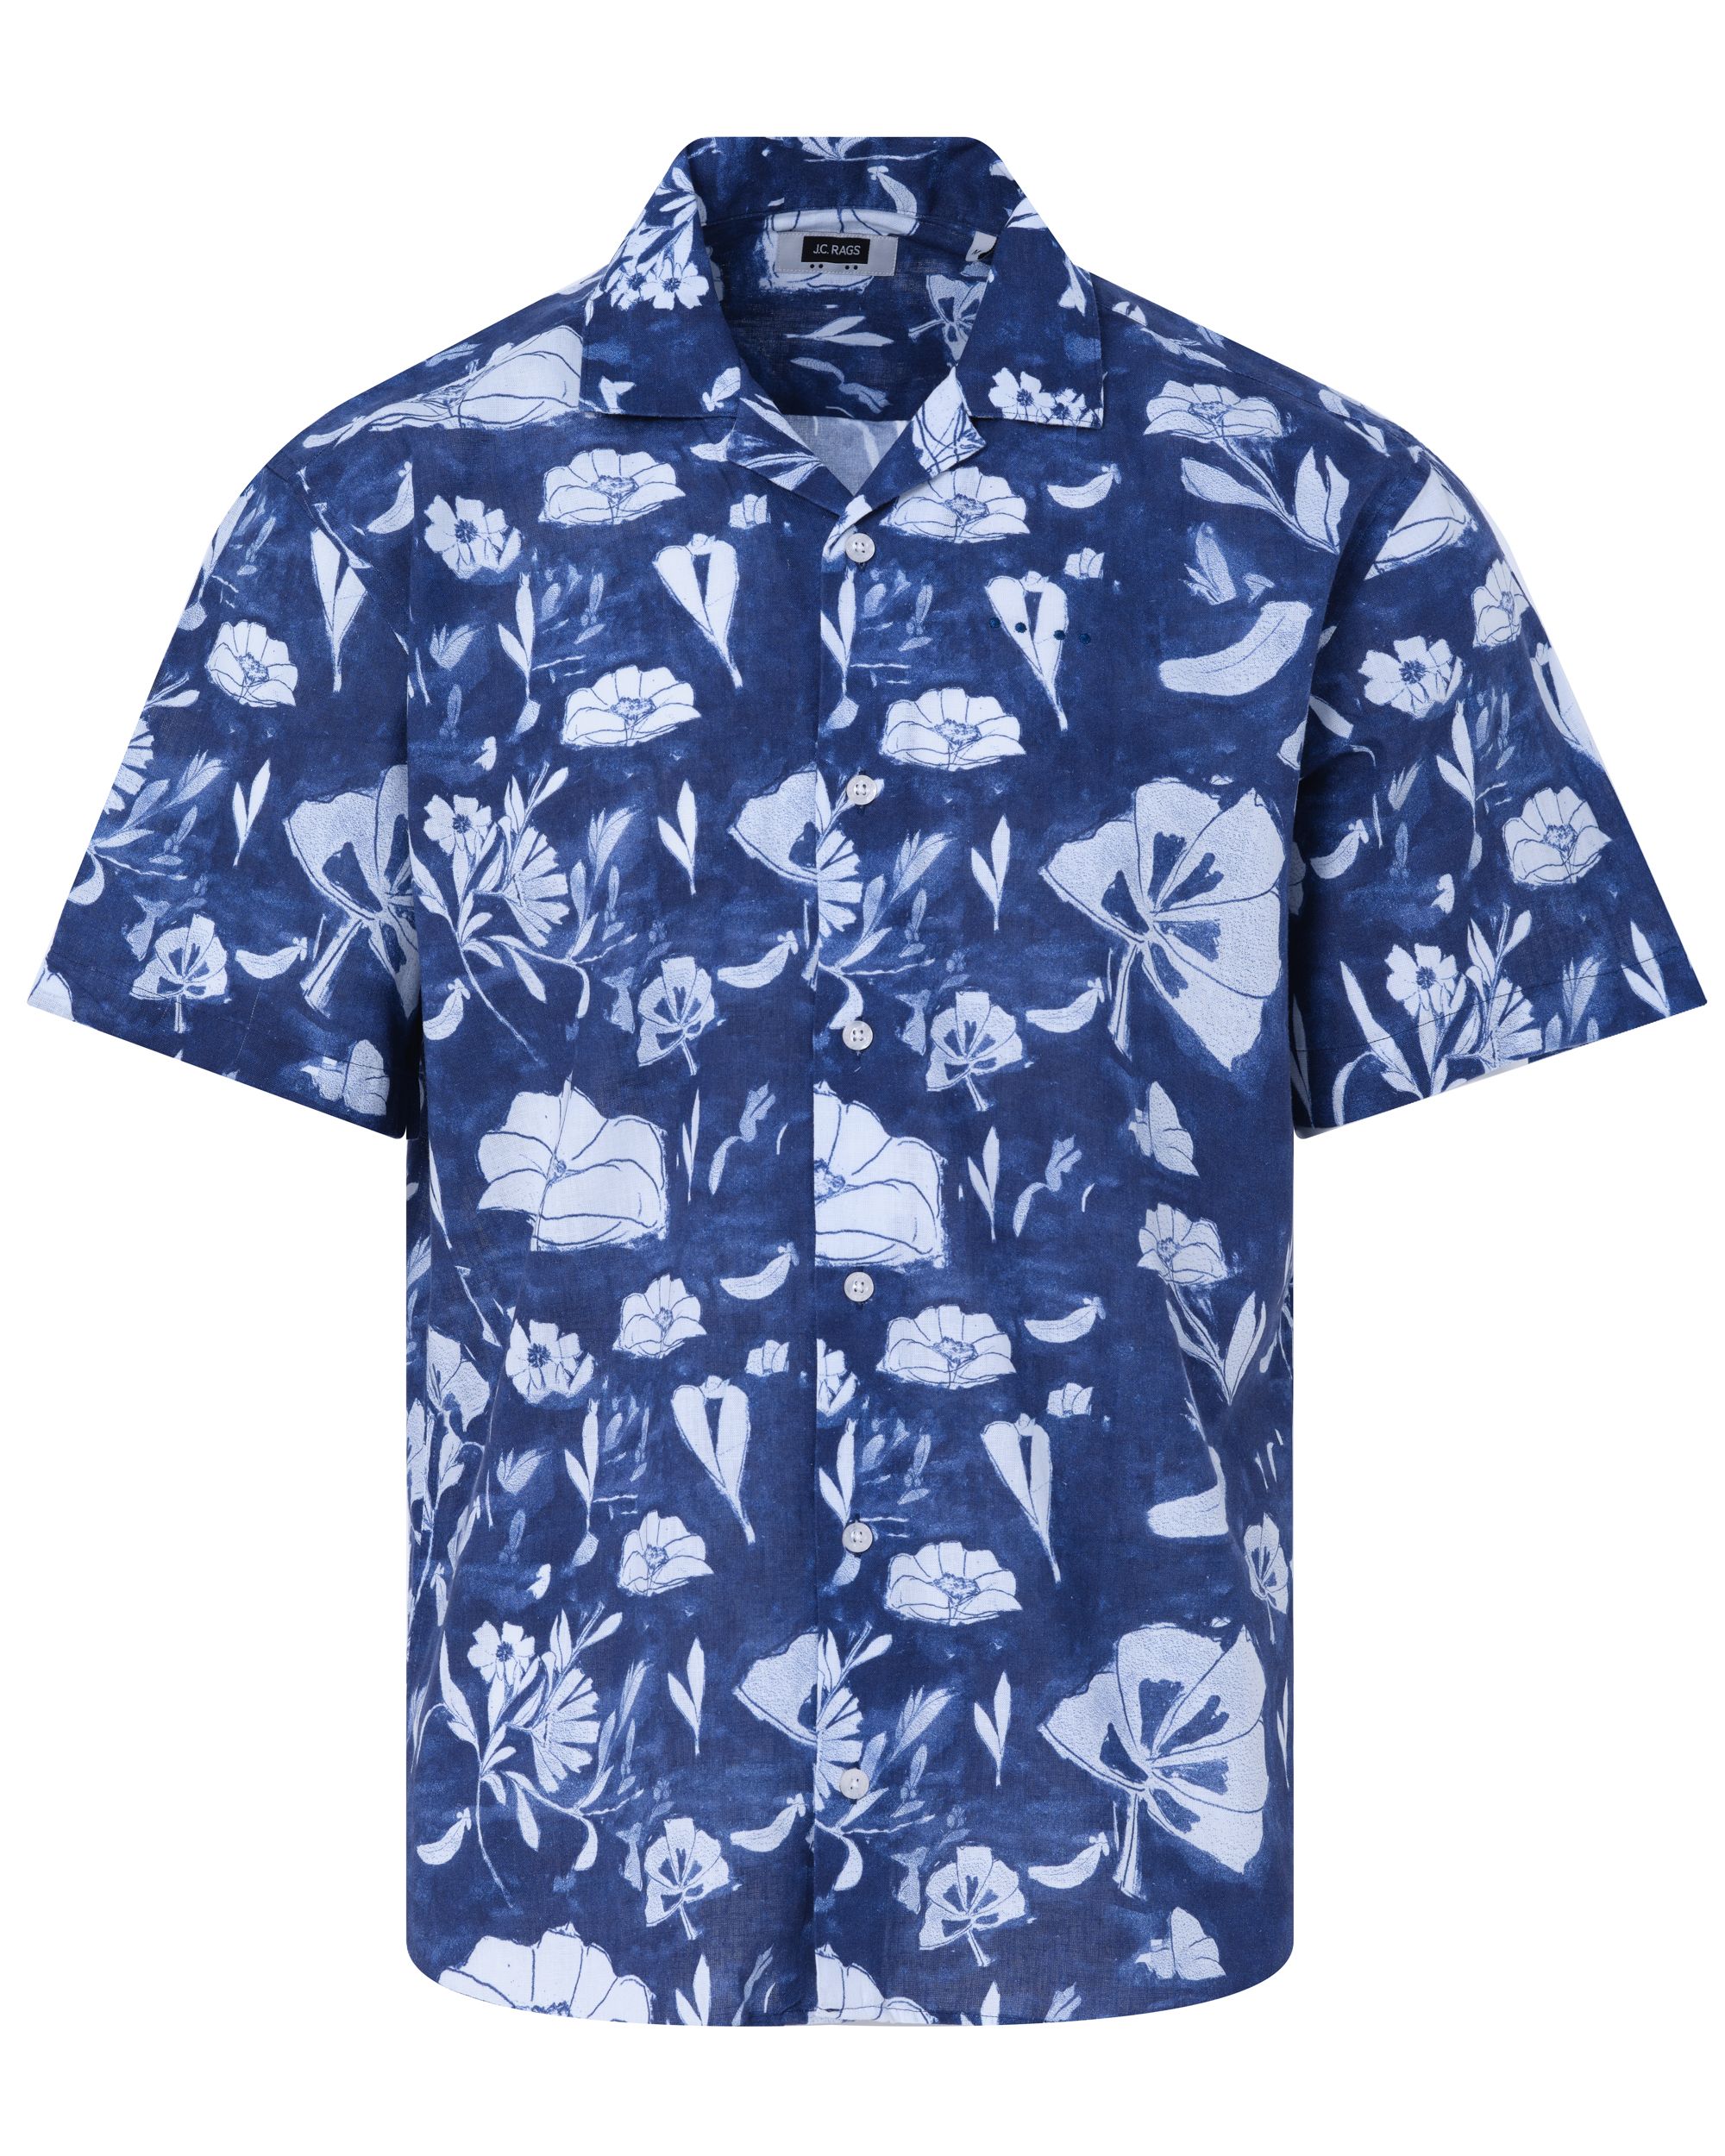 J.C. RAGS Elvis Floral Casual Overhemd KM Blue Depths dessin 088398-003-L